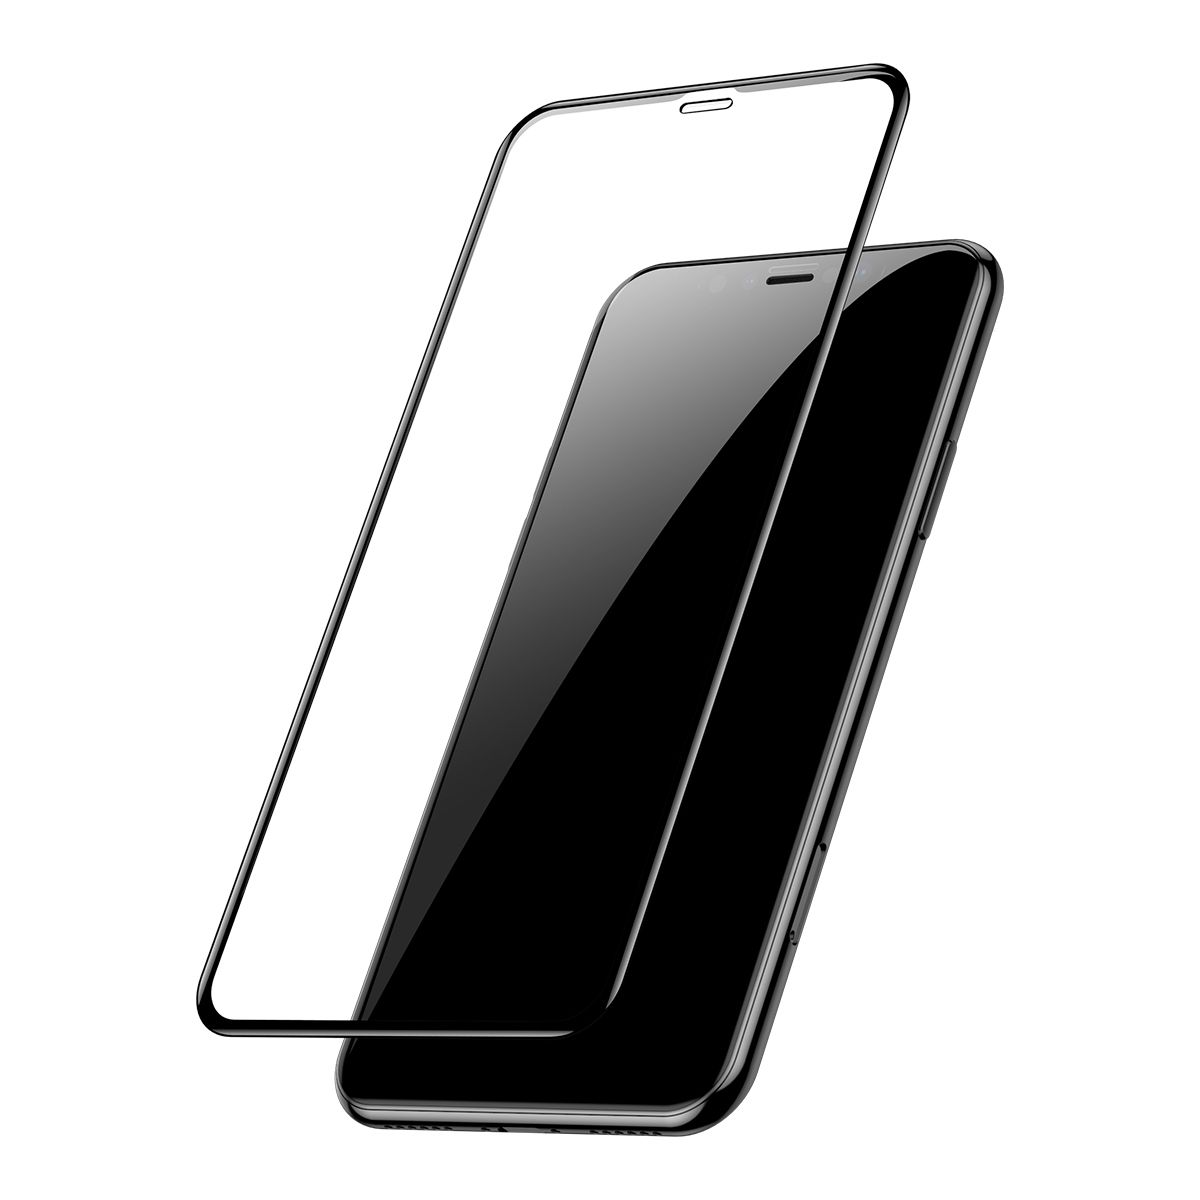 2 Películas Protetoras Curvas Baseus em Vidro Temperado para iPhone XR e 11